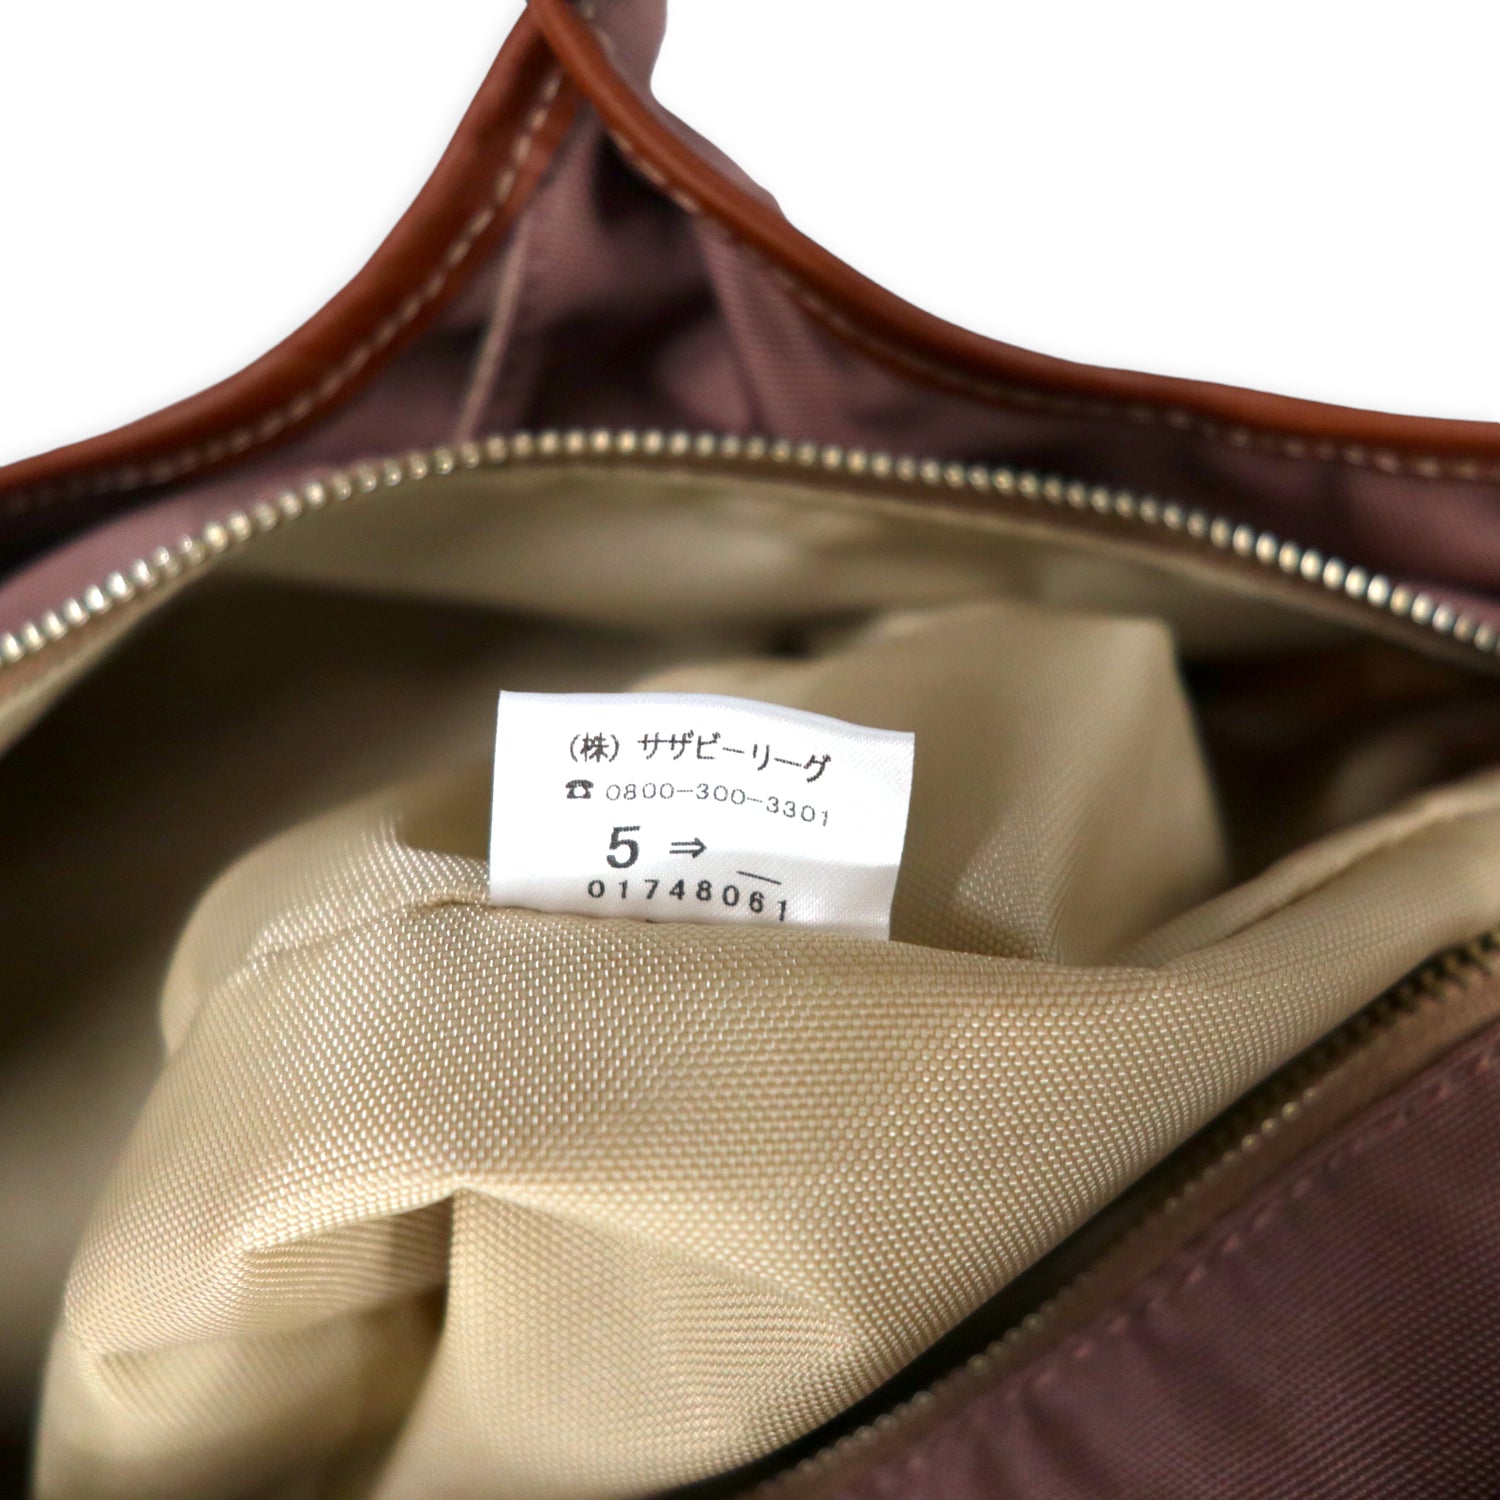 SAZABY Nylon Tote Bag Handbag Brown Leather Handle Japan MADE